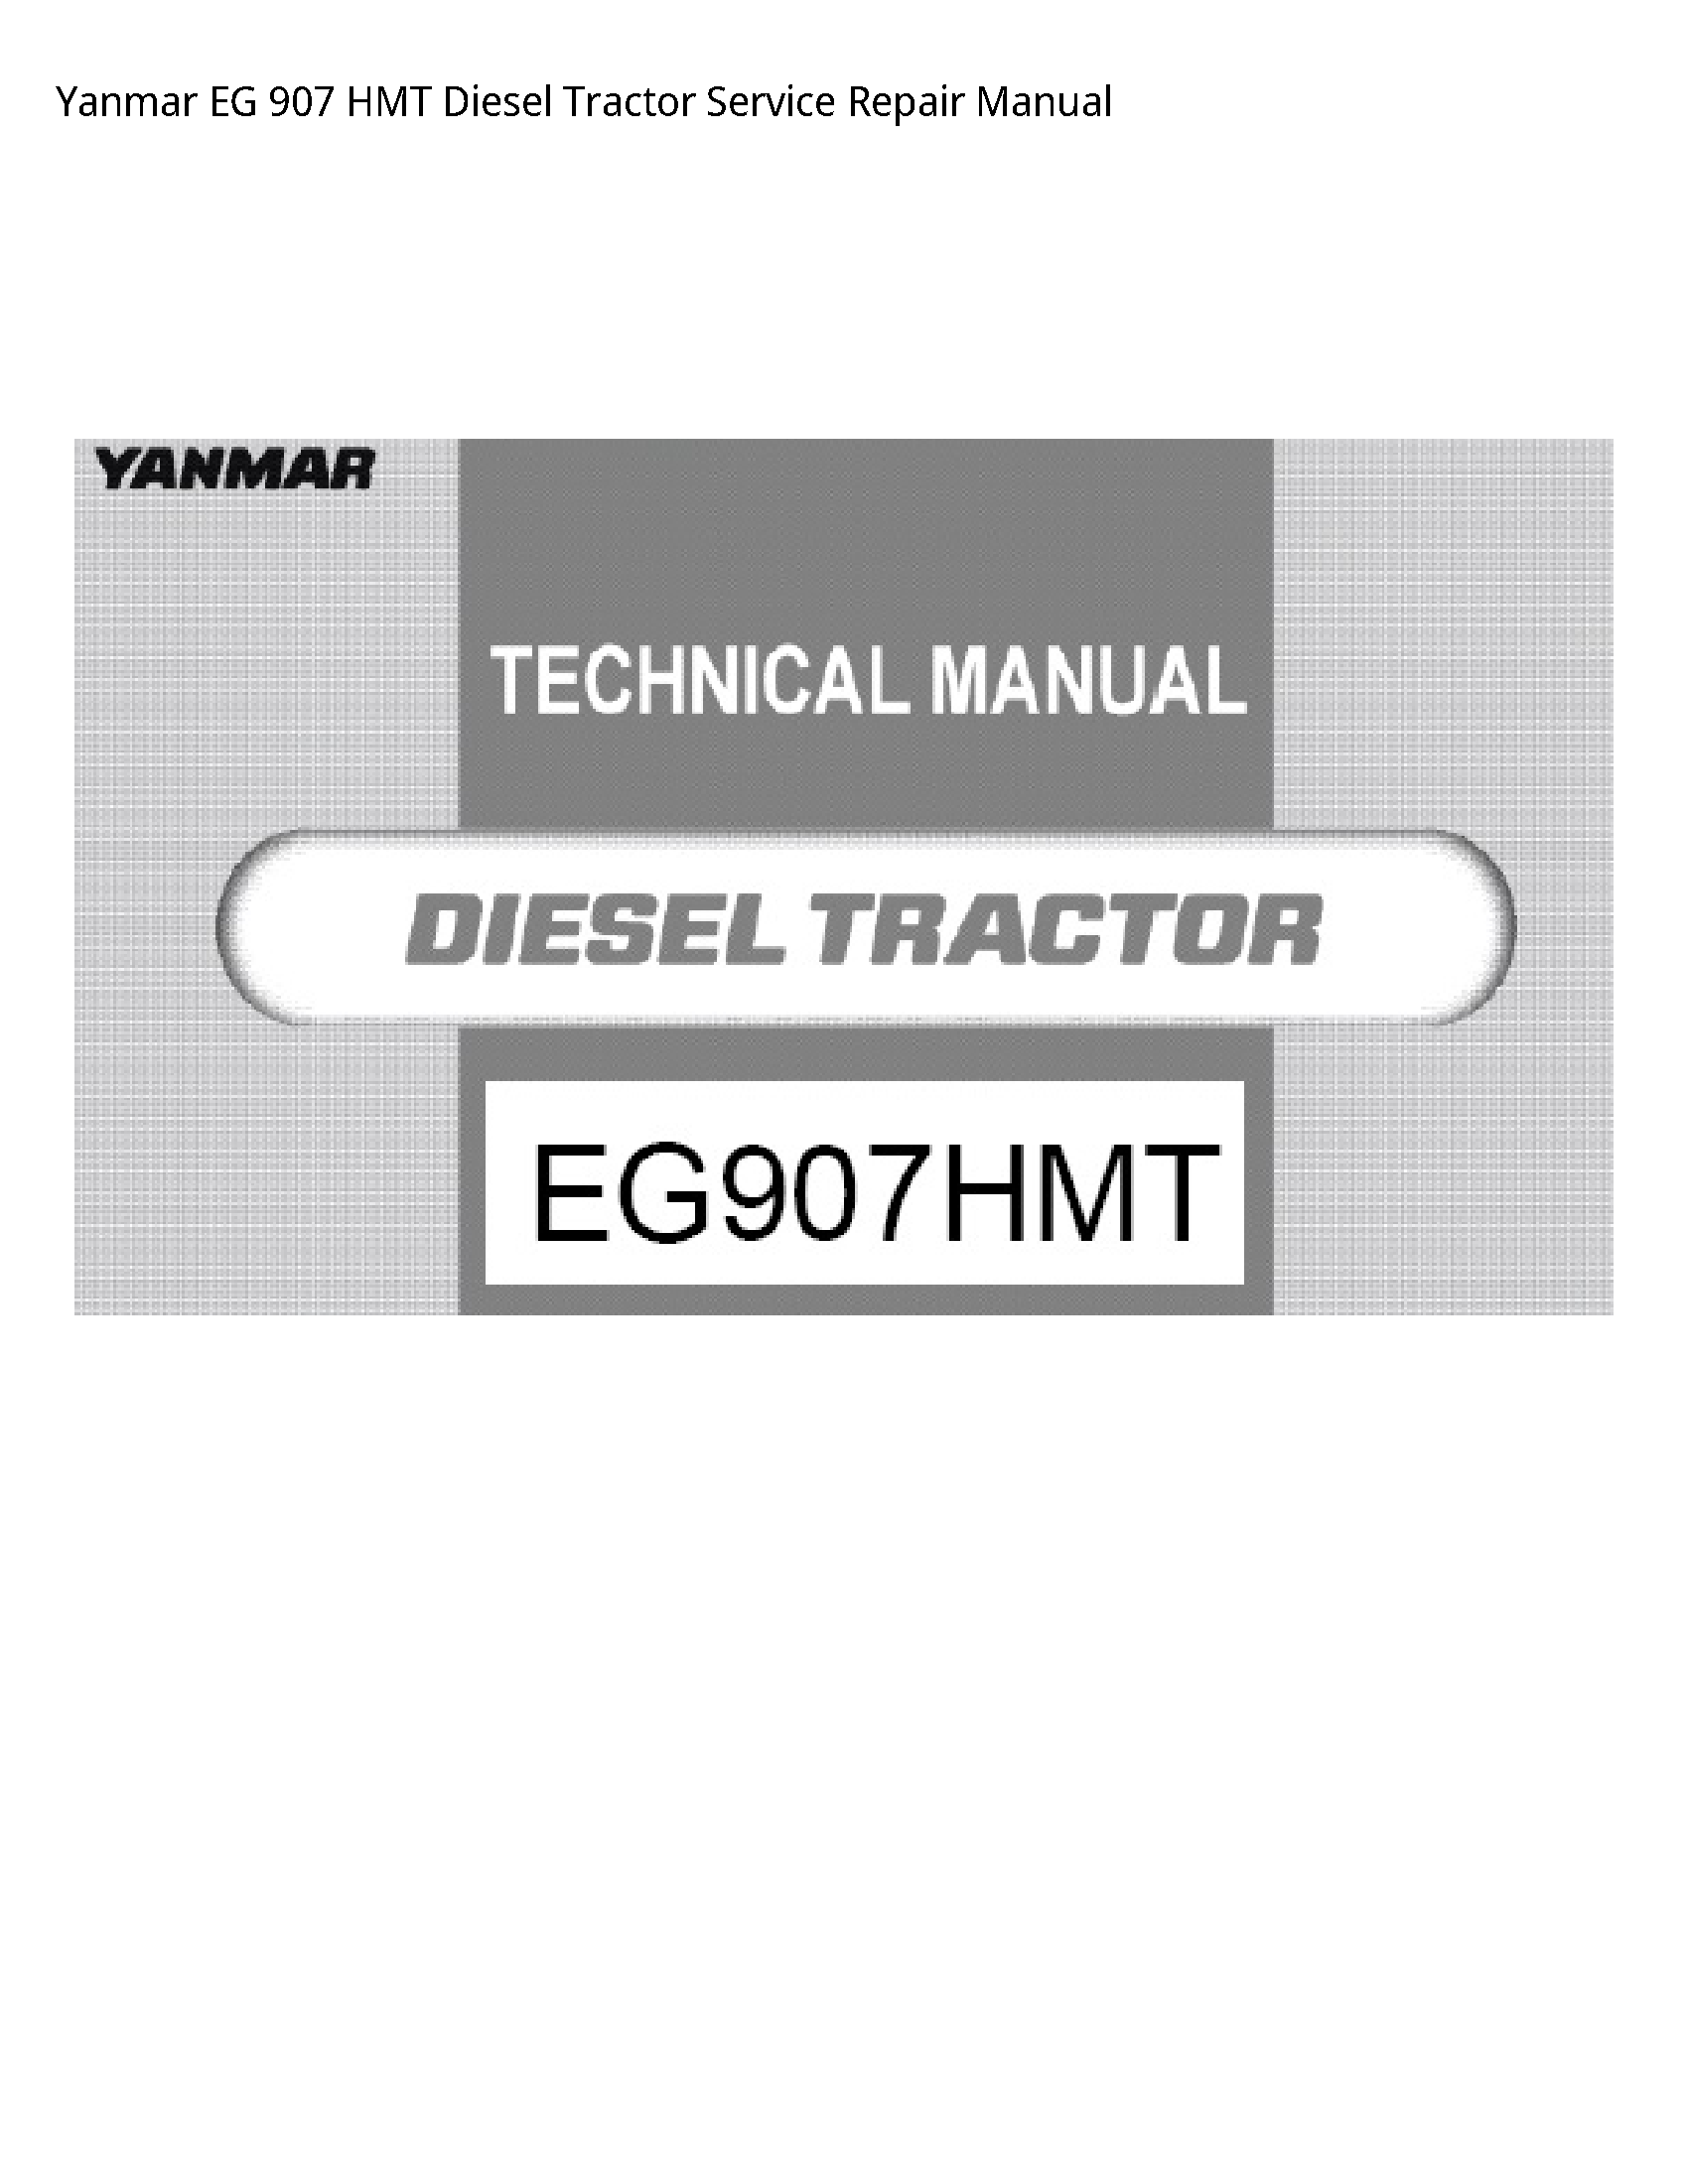 Yanmar 907 EG HMT Diesel Tractor manual